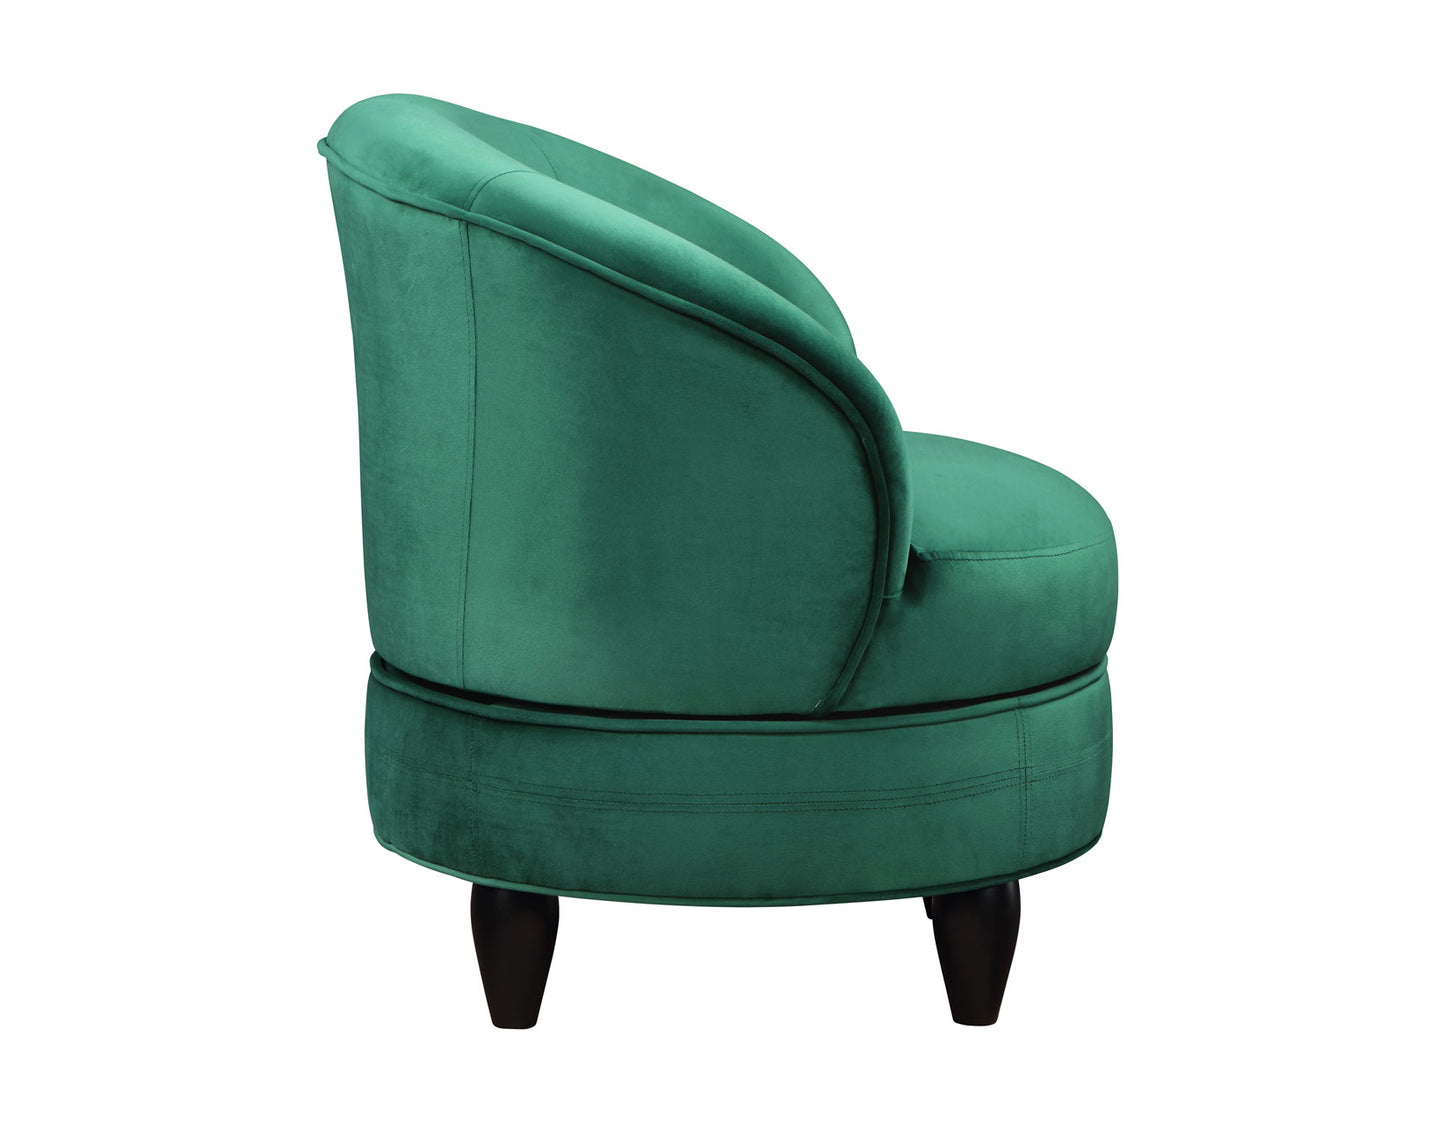 Sophia Swivel Accent Chair, Green Velvet